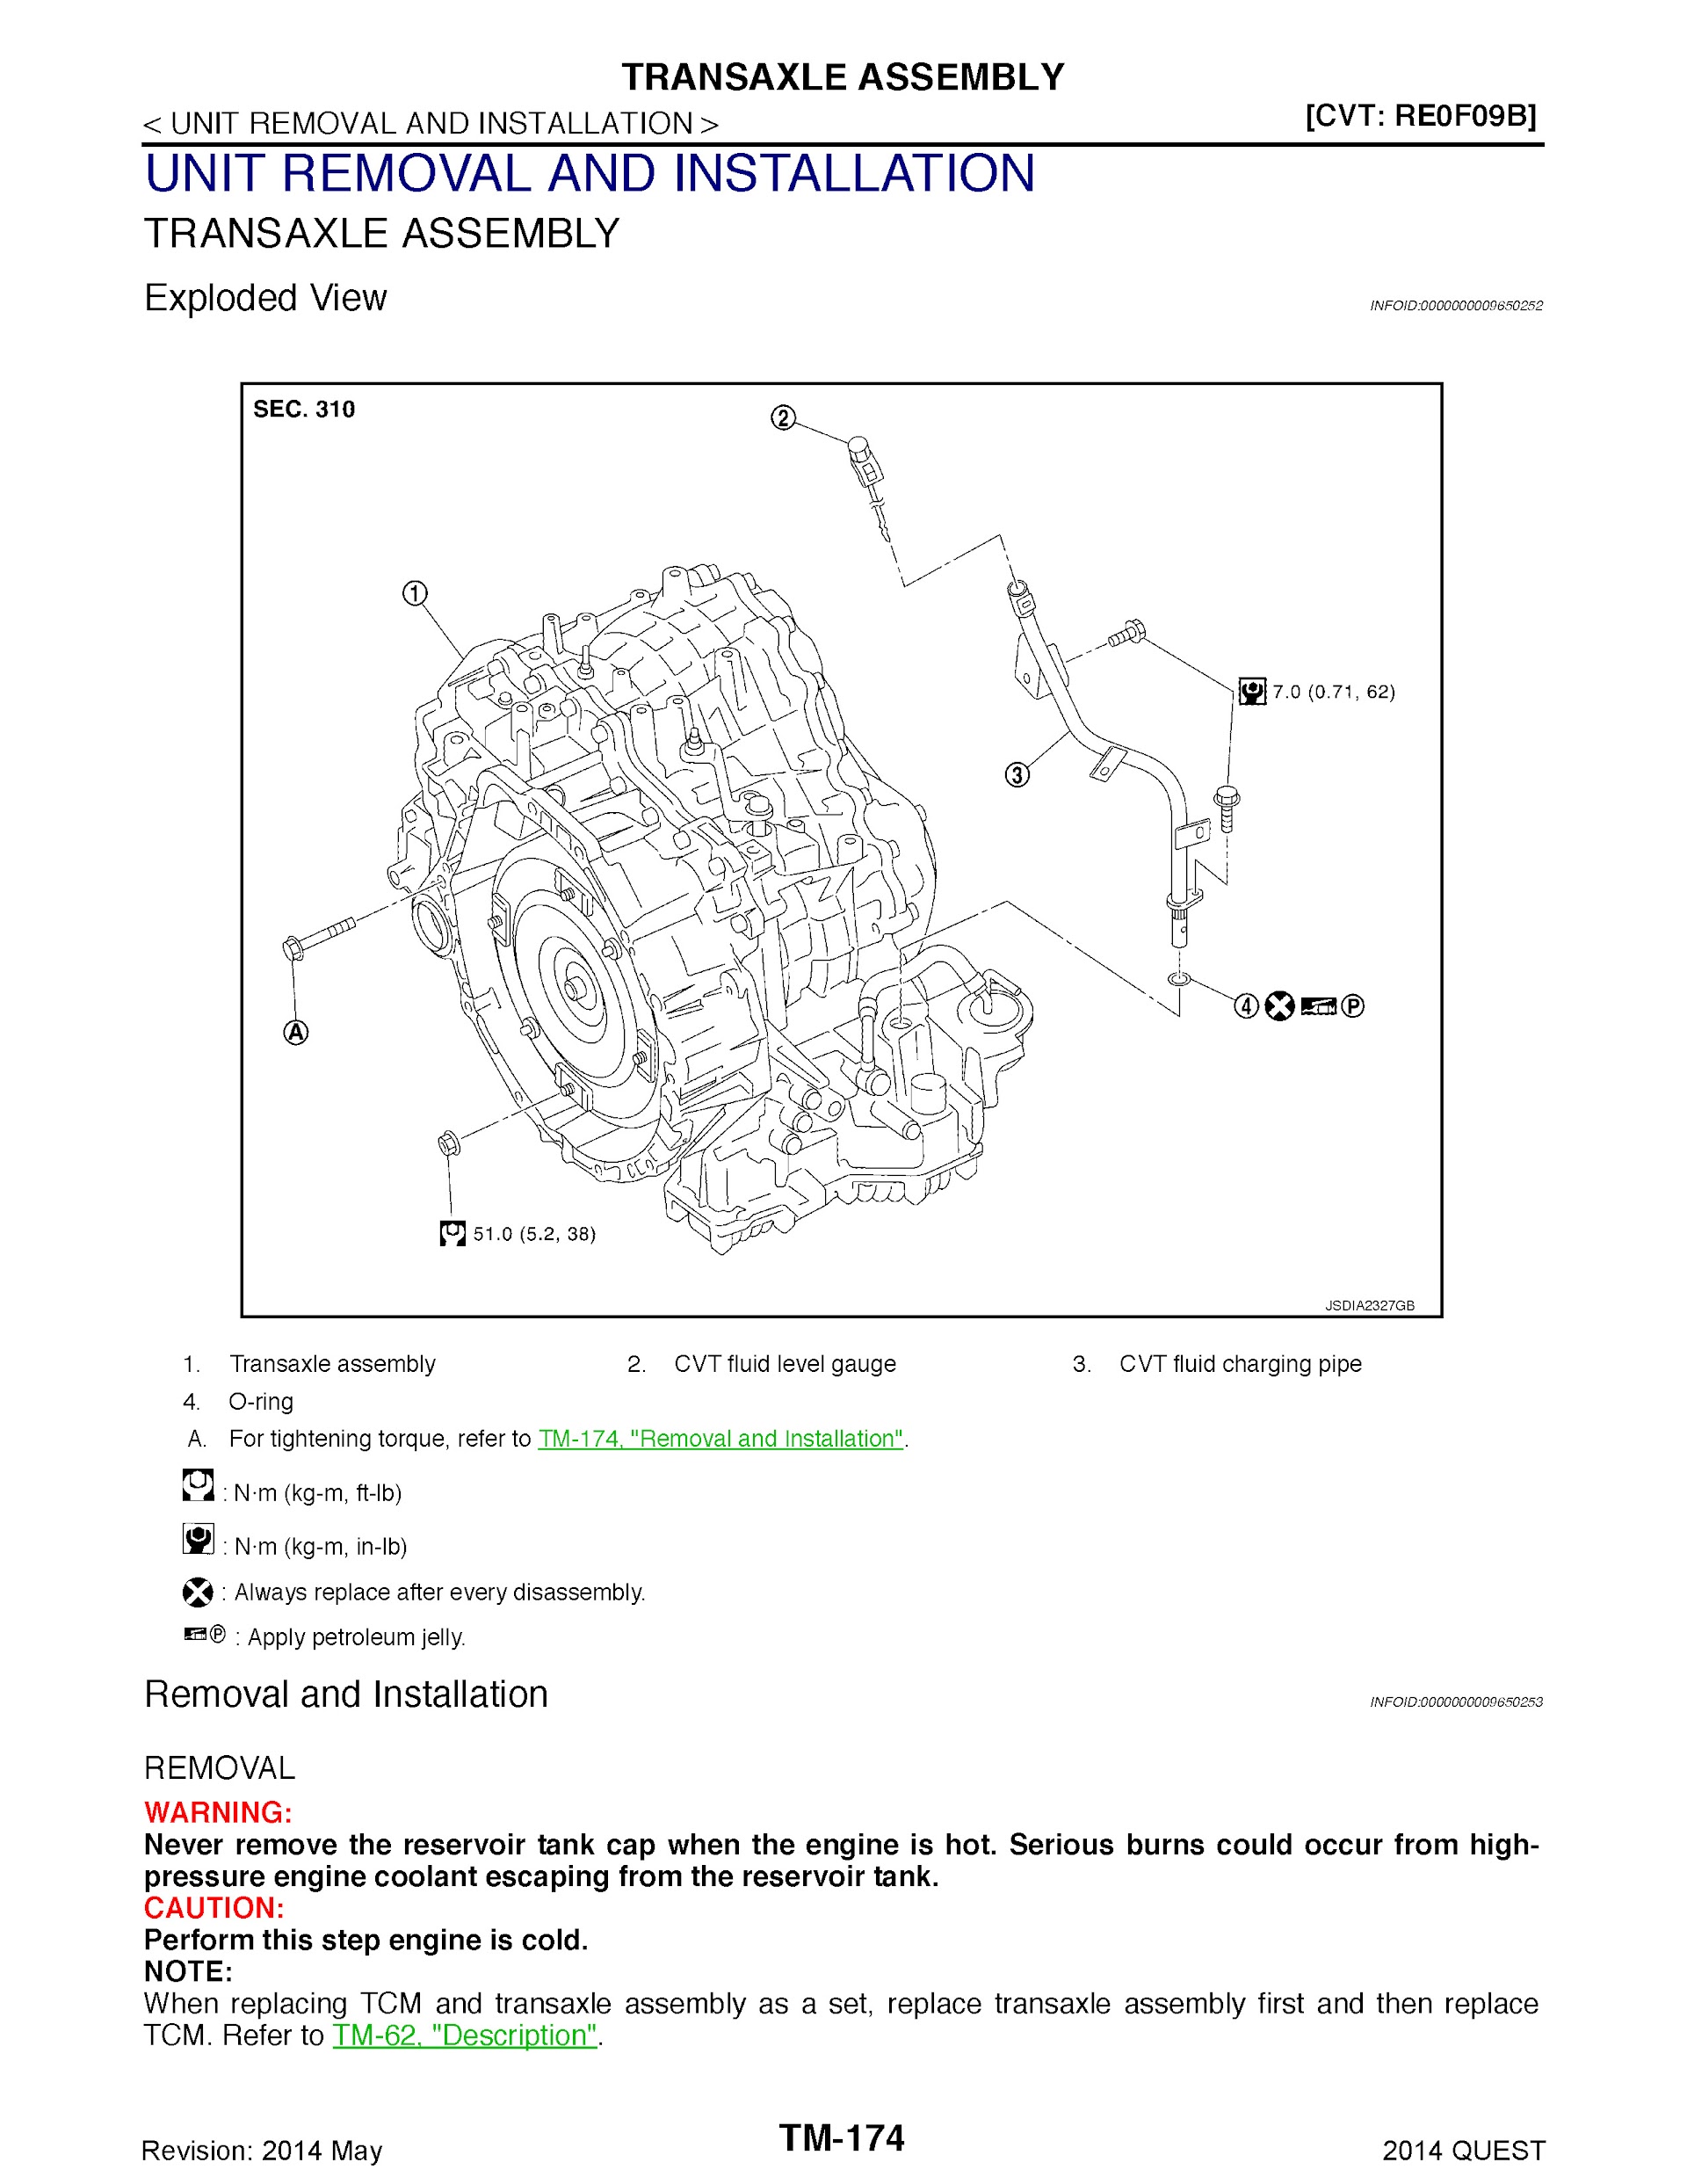 2014 Nissan Quest Repair Manual